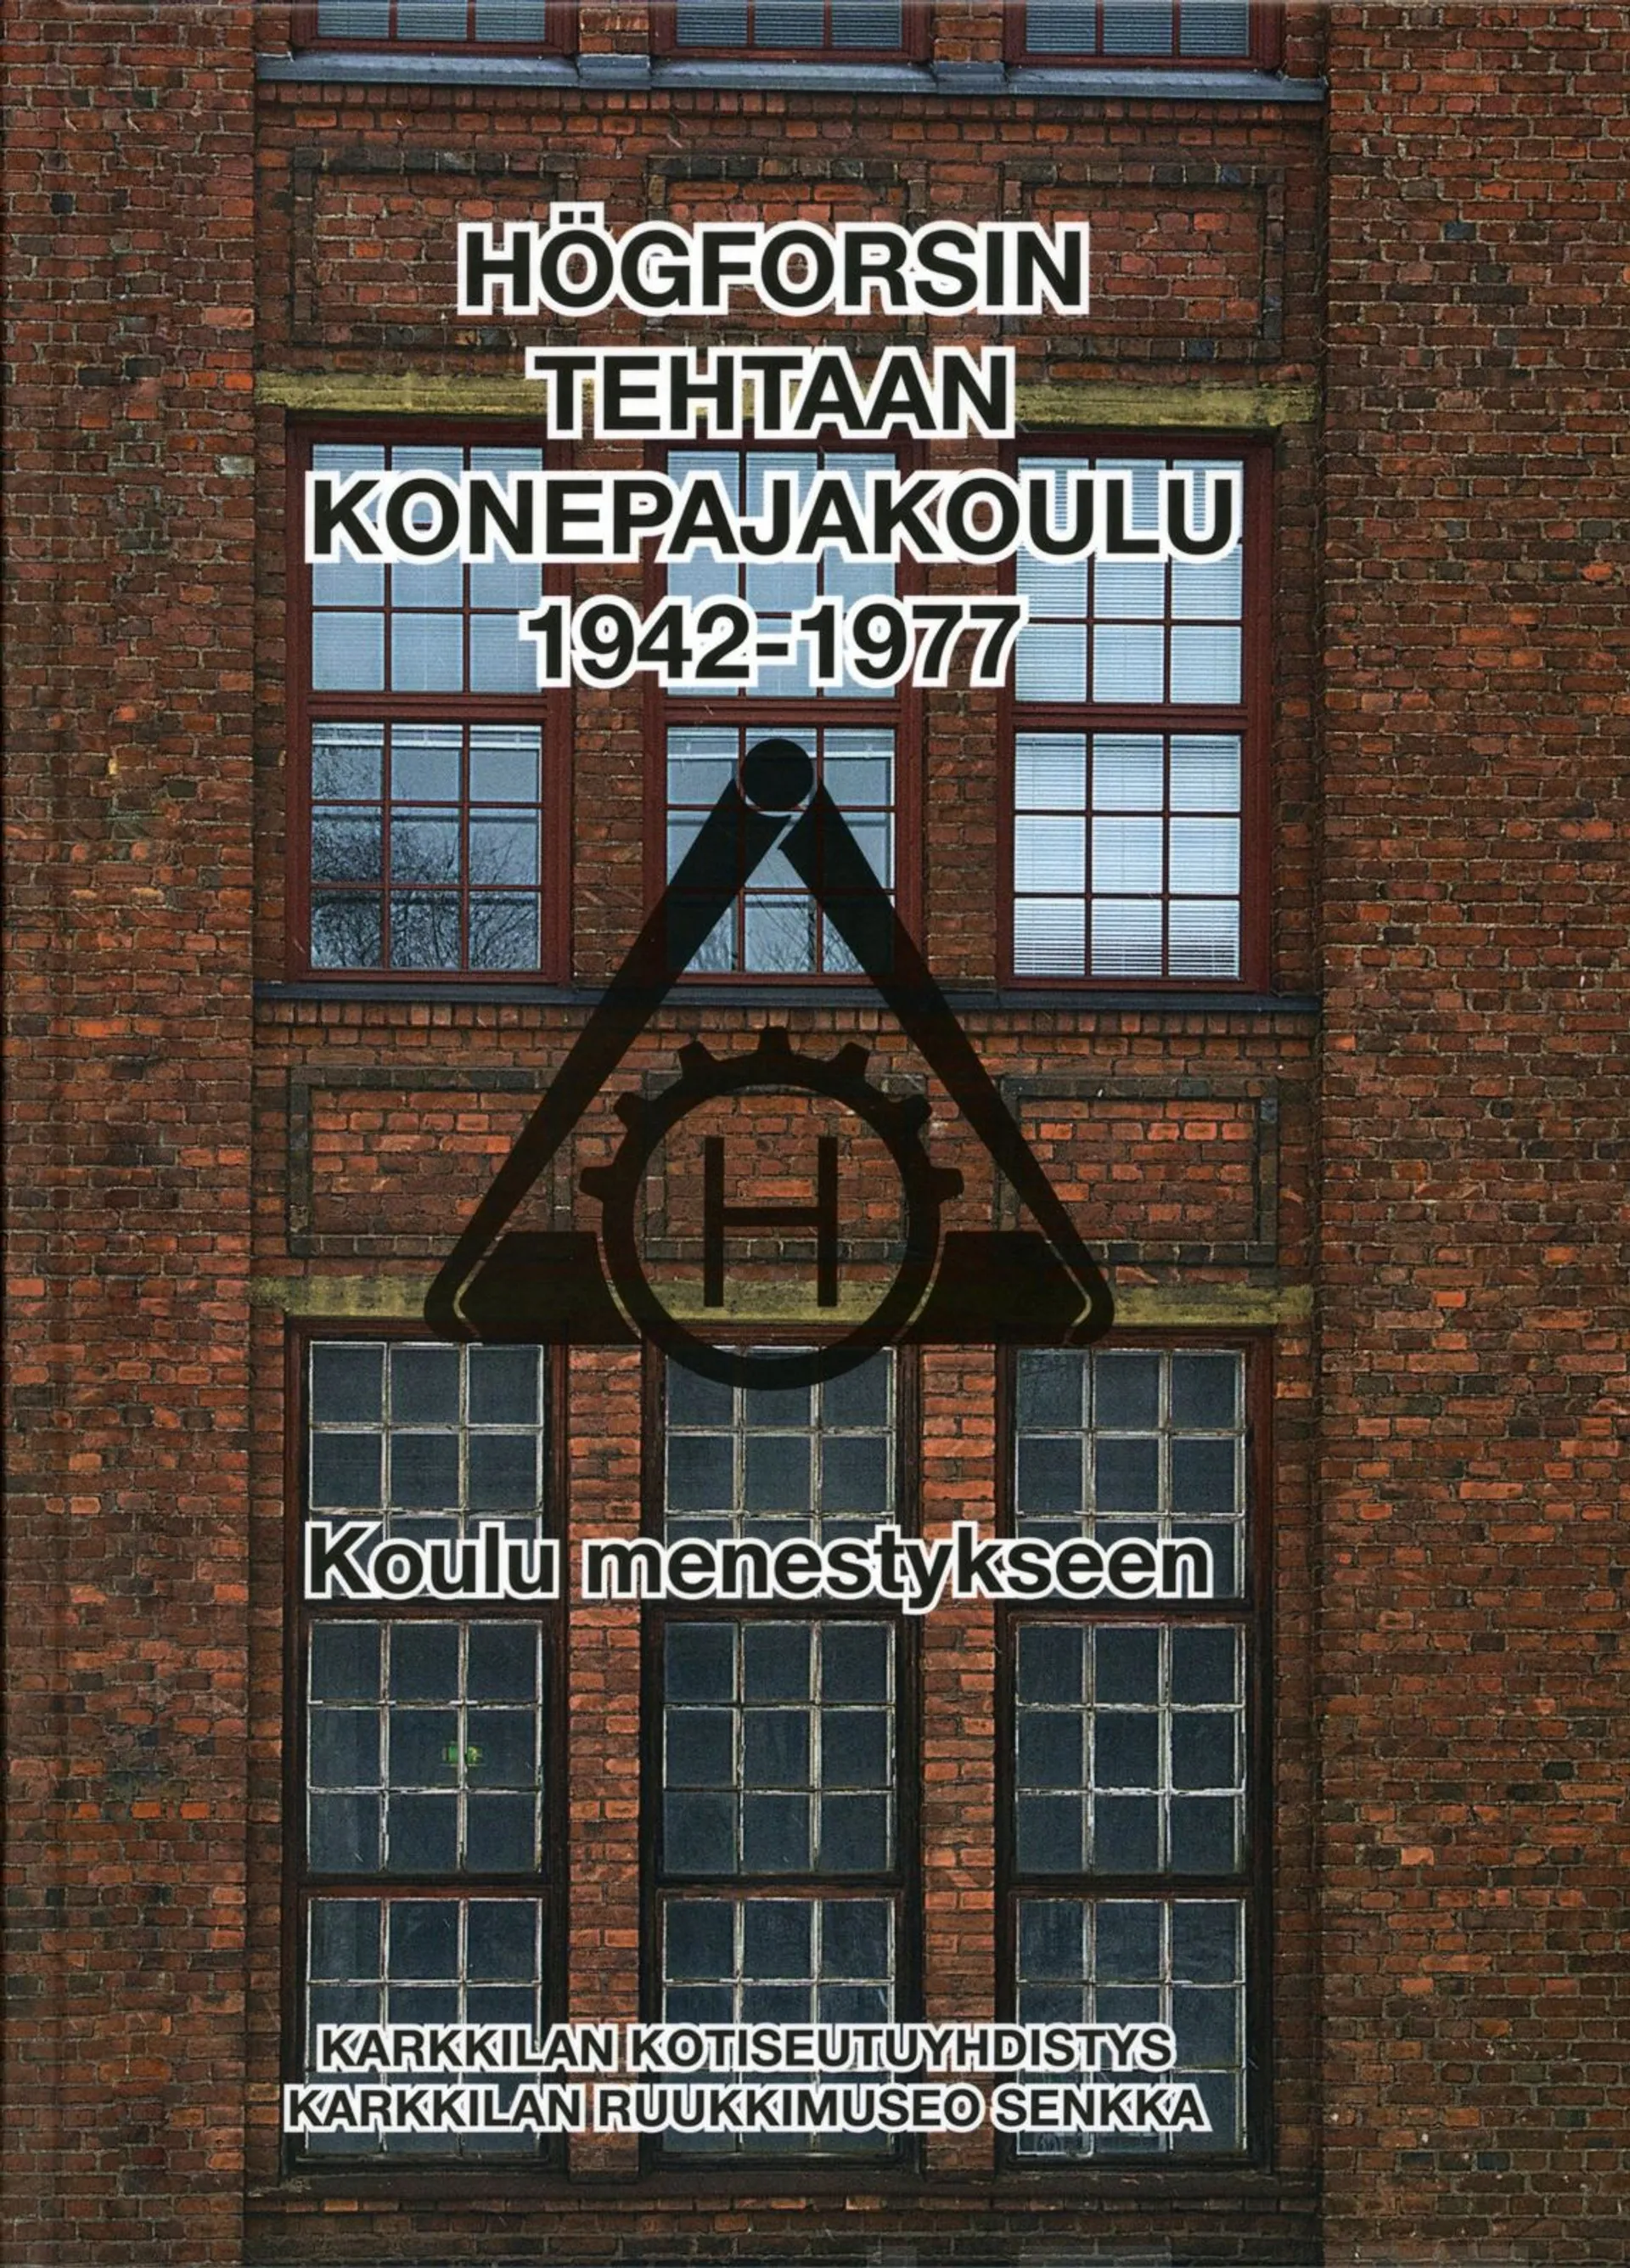 Högforsin tehtaan konepajakoulu 1942-1977